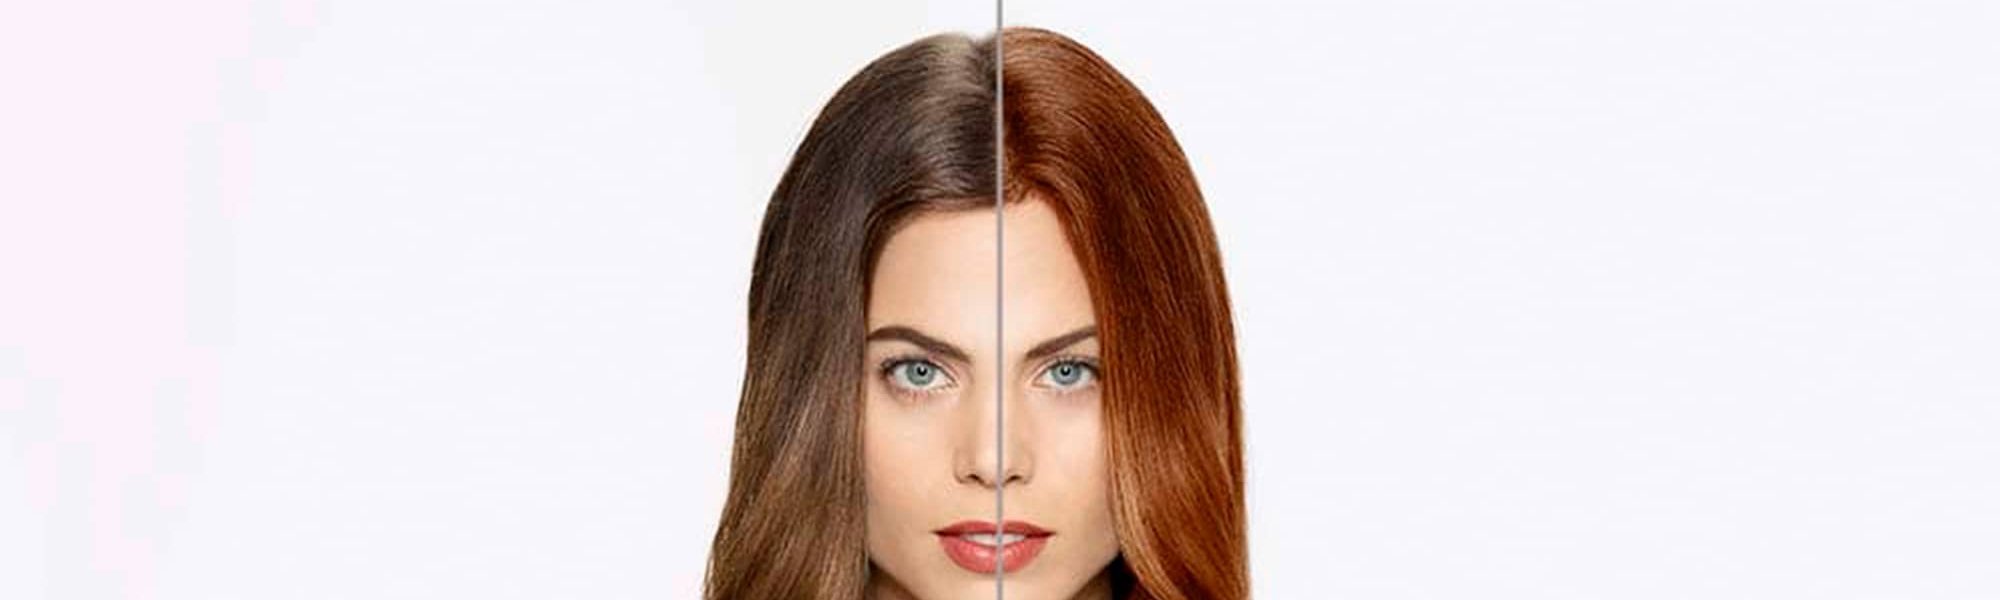 Look: This hair color app lets you try different hair dyes - L'Oréal Paris